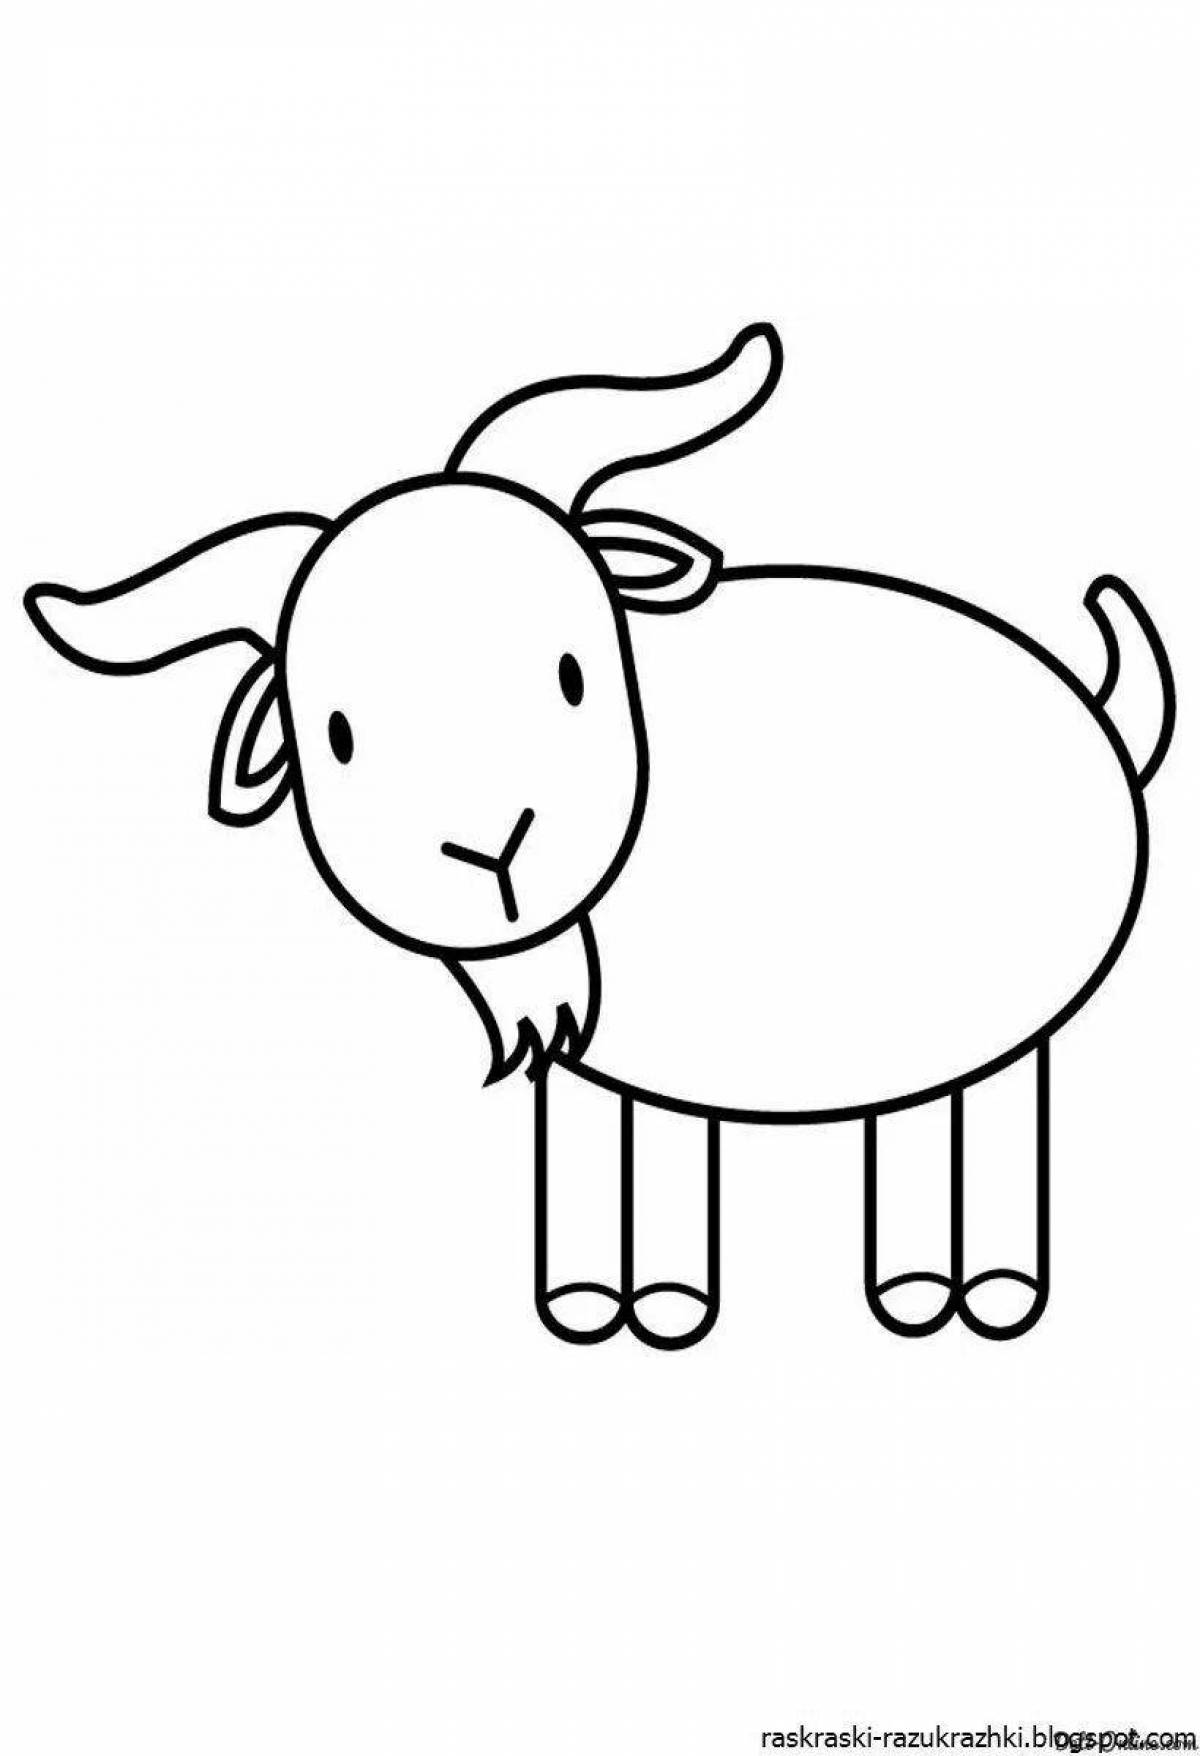 Фото Раскраска блаженная коза для детей